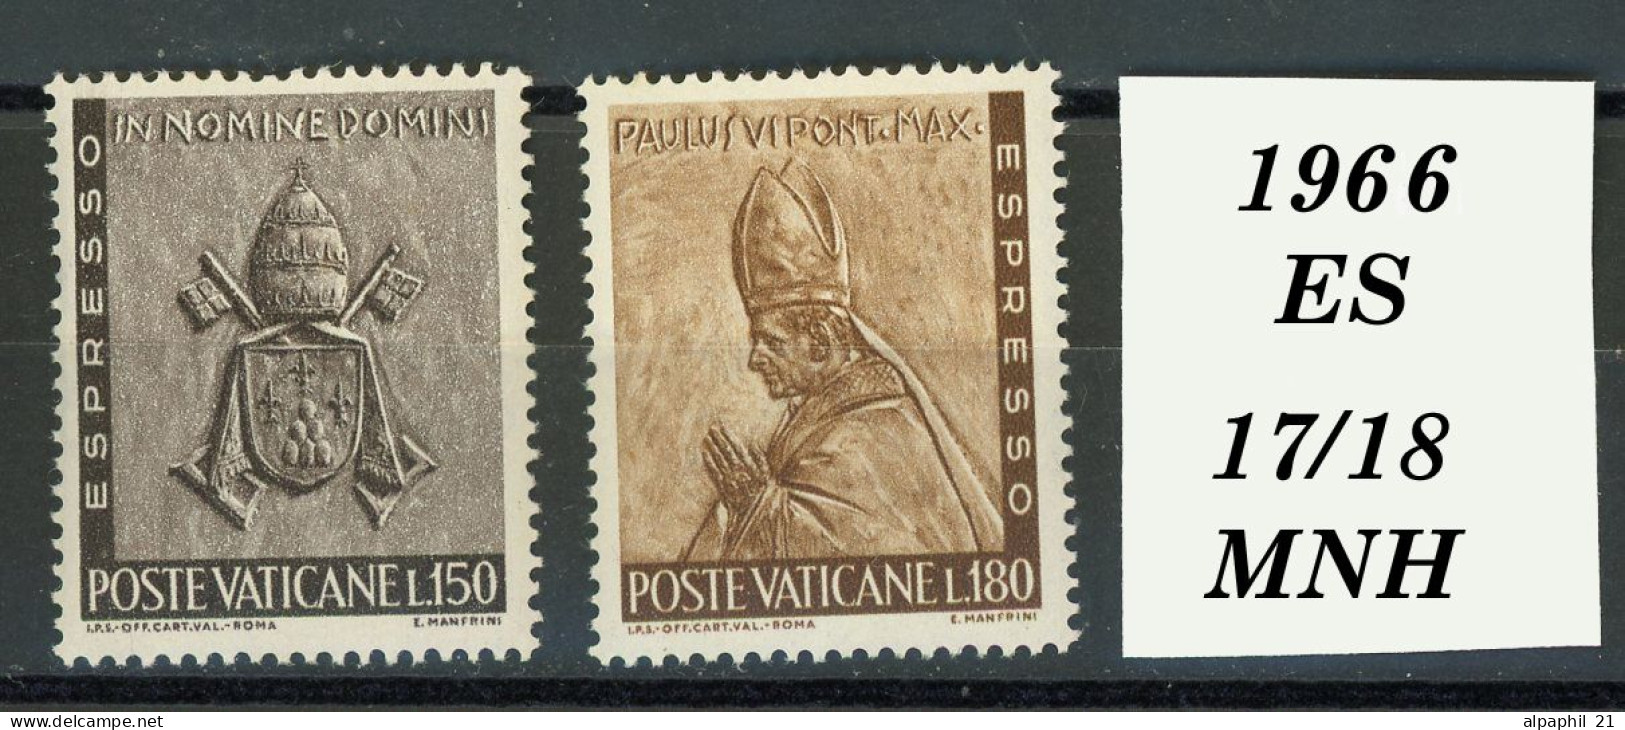 Città Del Vaticano: Paul VI, 1966 - Nuovi